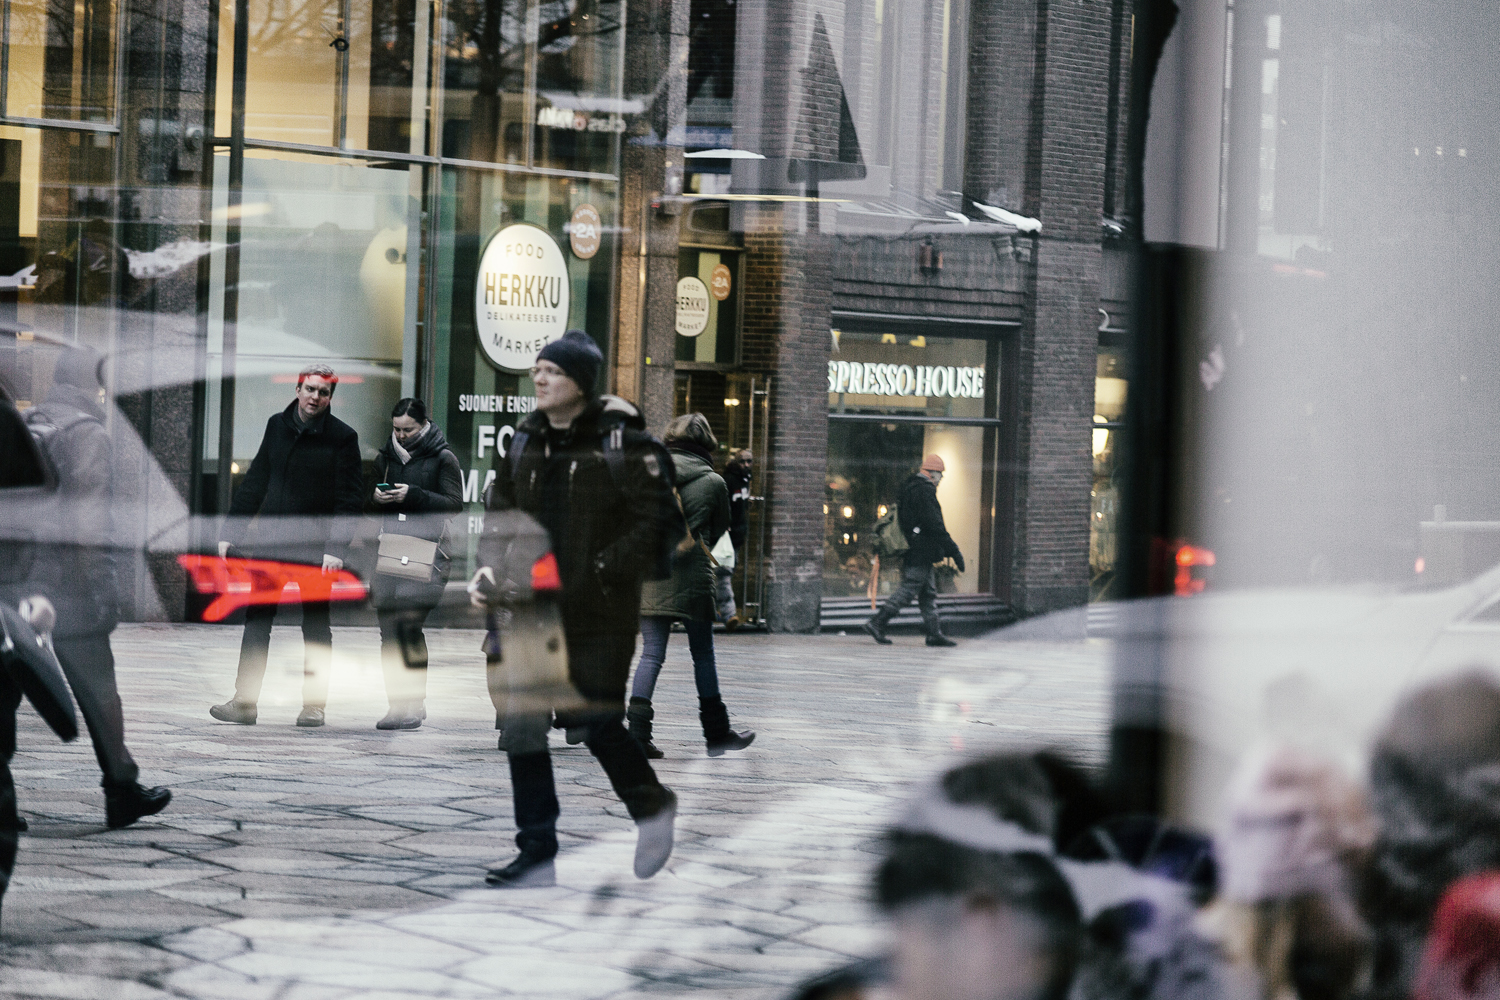 katukuvaus, katuvalokuva, streetphoto, streetphotography, Helsinki, Suomi, Finland, city, big city, capital, valokuvaaja, Frida Steiner, Visualaddict, talvi, winter, snow, streets, people